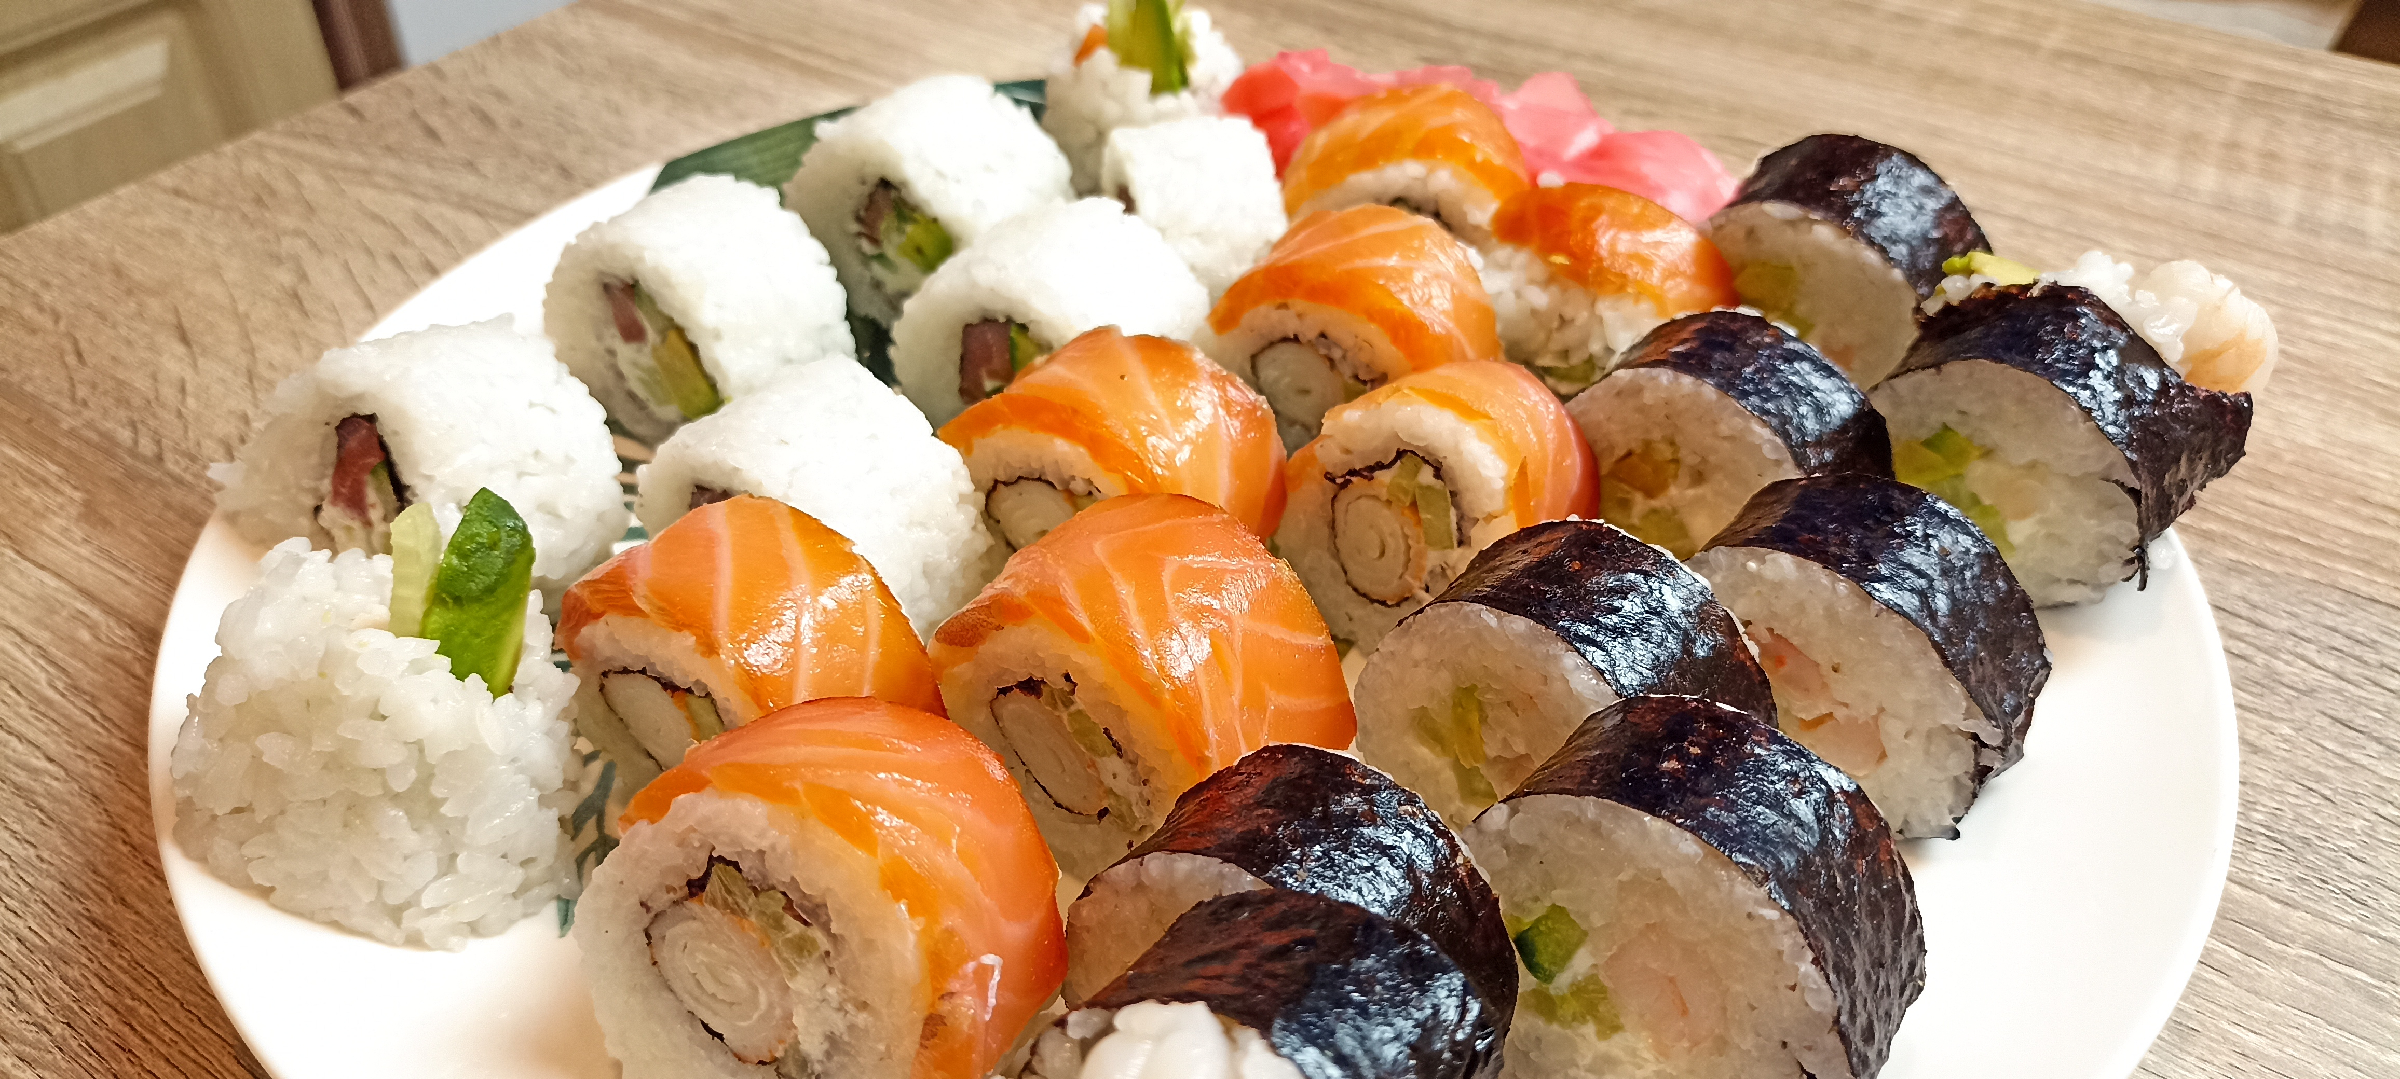 Порадуй себя и приготовь суши самостоятельно вместе с нами. Держи простенький рецепт роллов